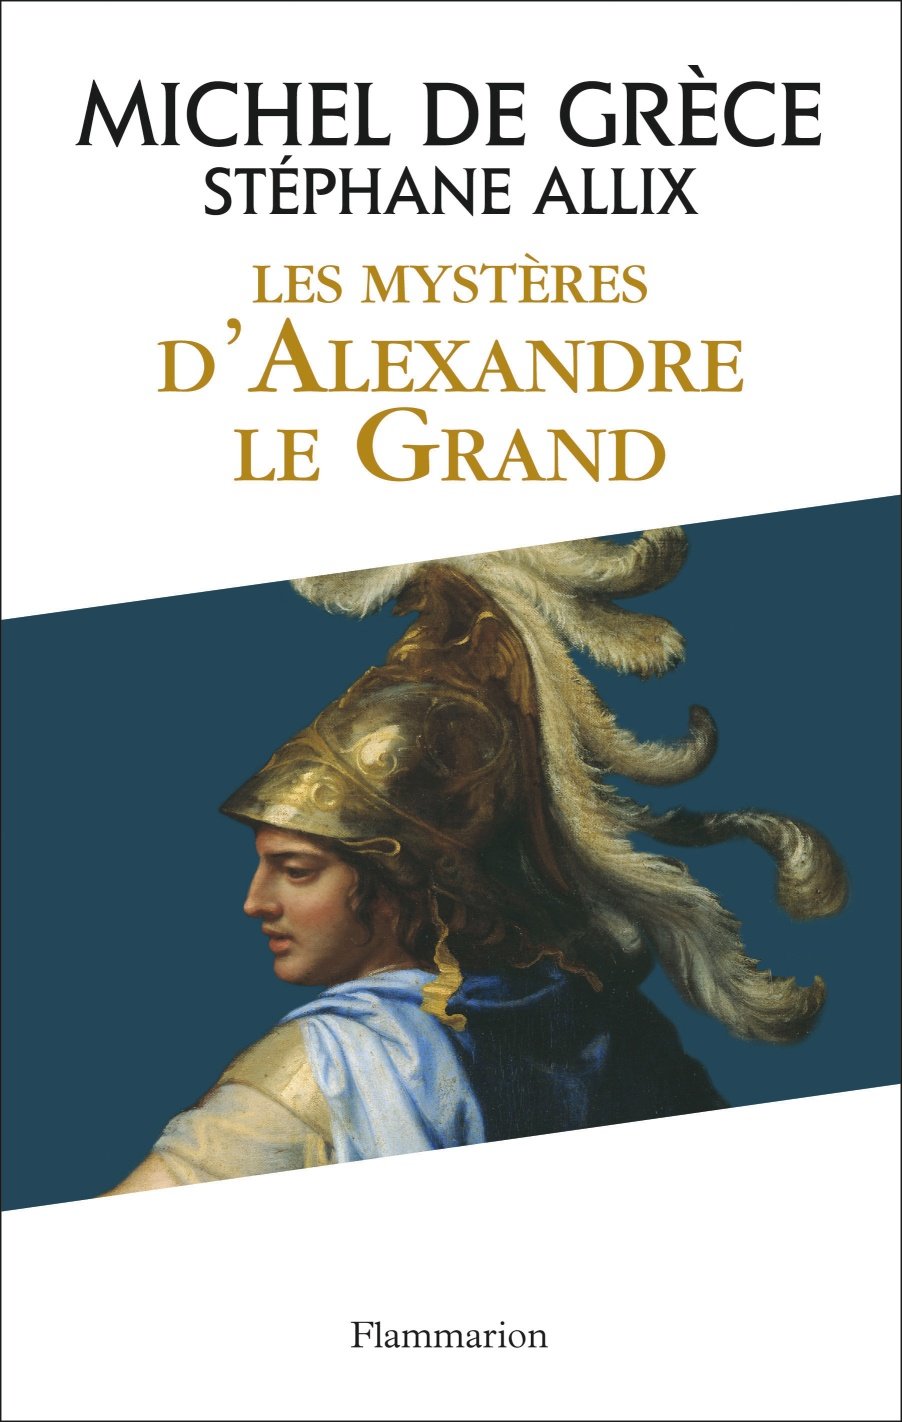 Les Mysteres d'Alexandre le Grand, 2014, 240 p. 